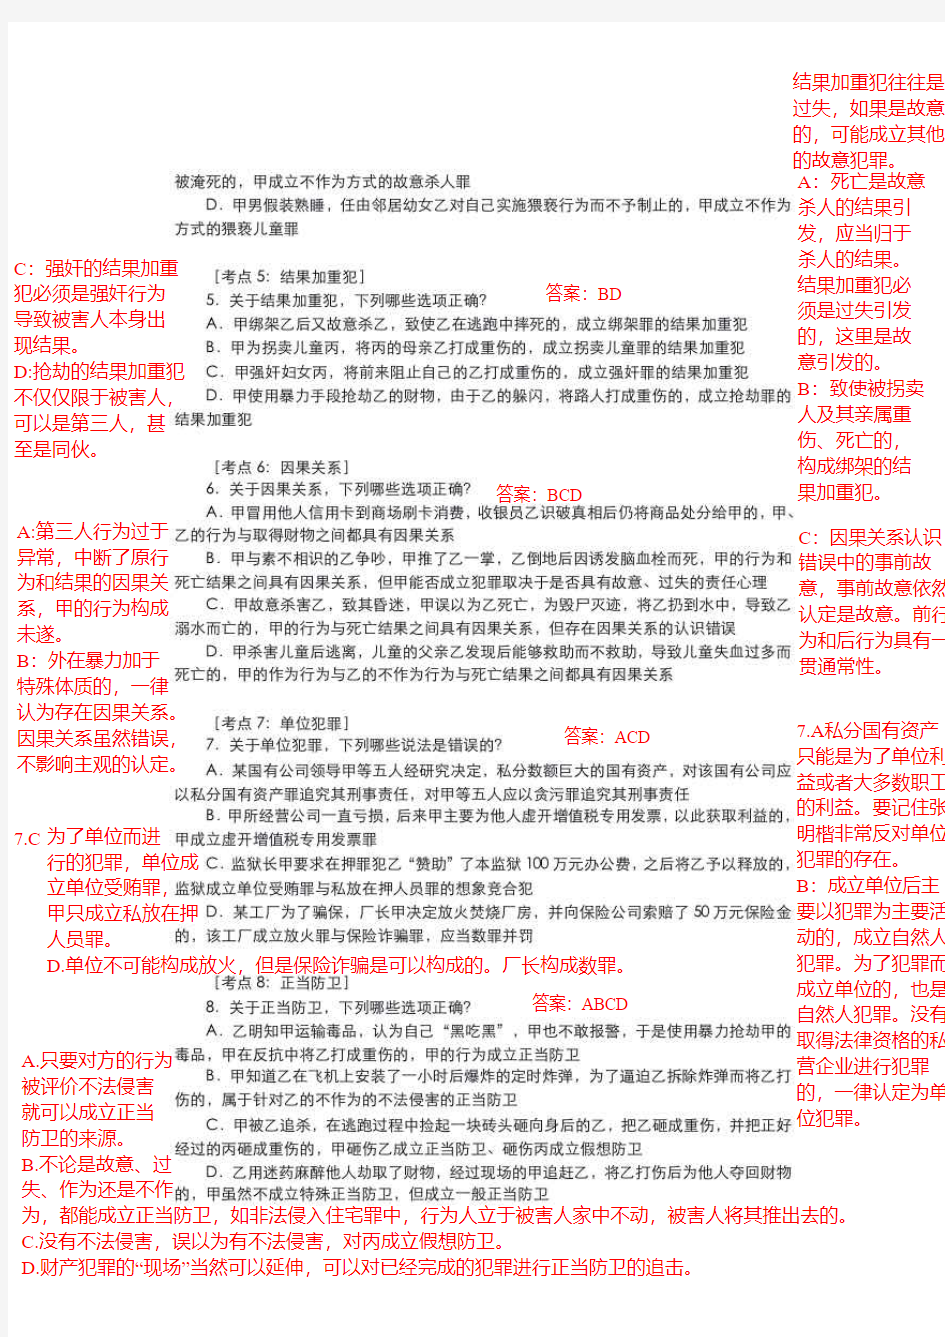 刘凤科刑法40题笔记吐血版